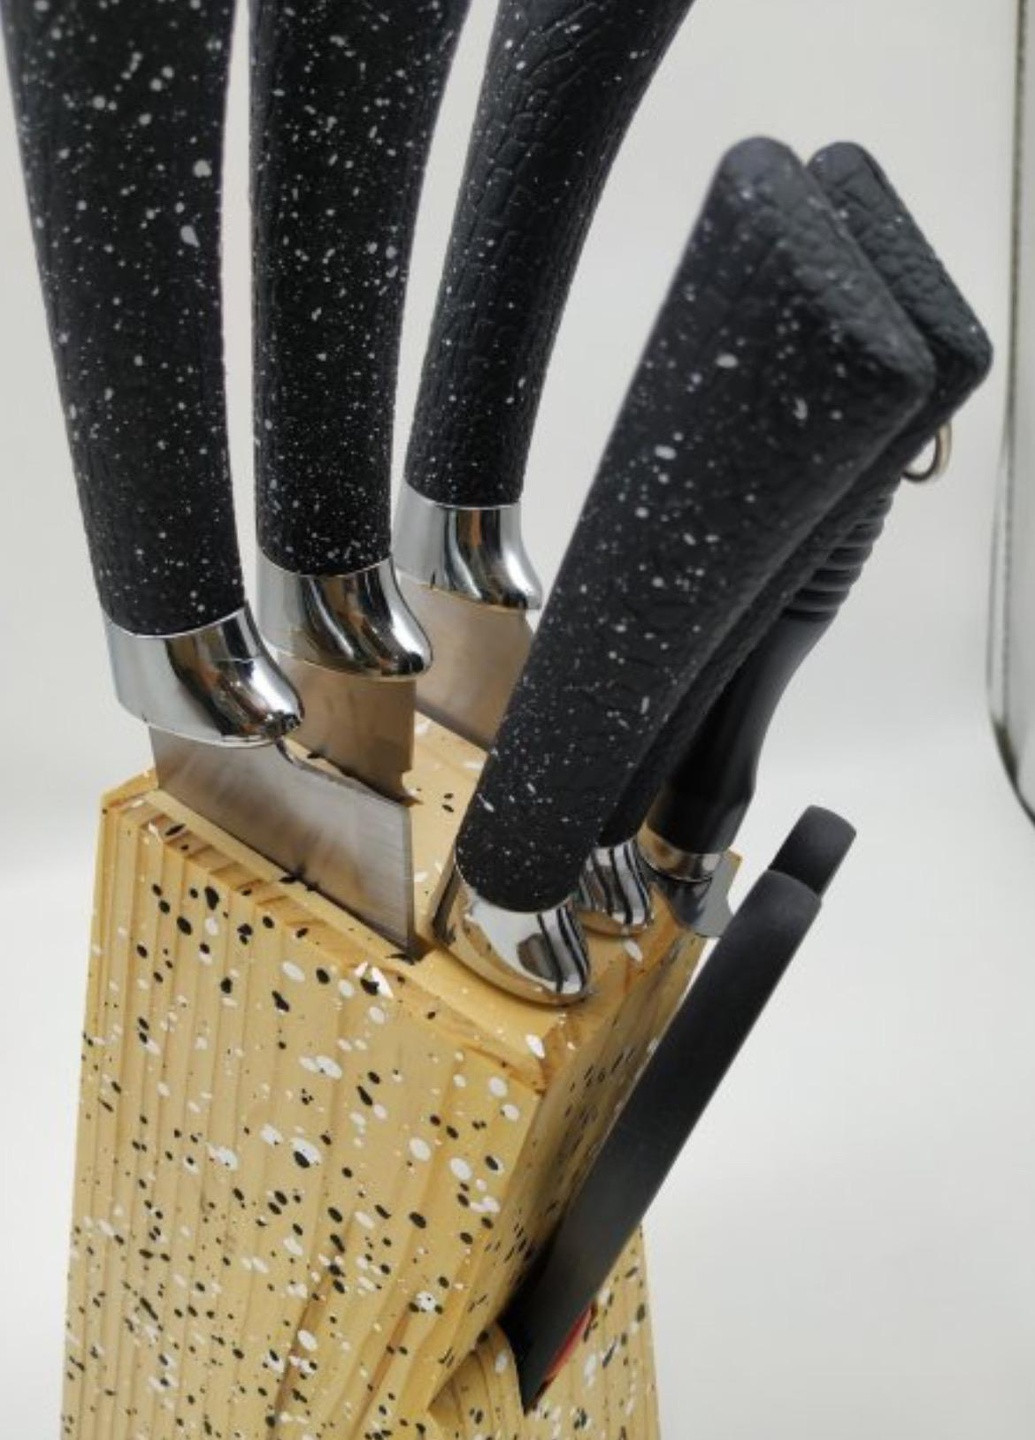 Набор ножей с ножницами и подставка из нержавеющей стали 8 предметов Rainberg RB-8806 чёрные, нержавеющая сталь